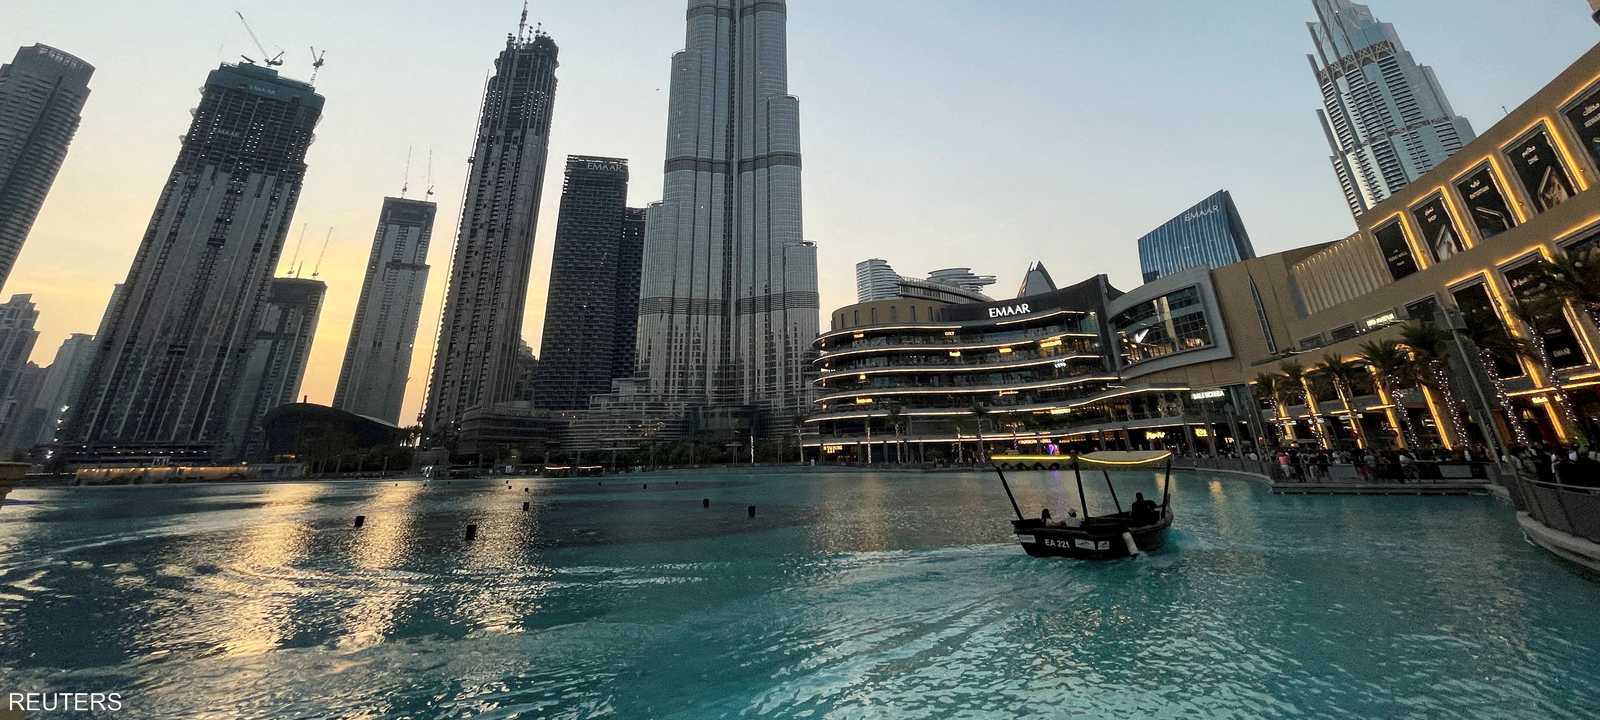 إعمار العقارية - برج خليفة دبي